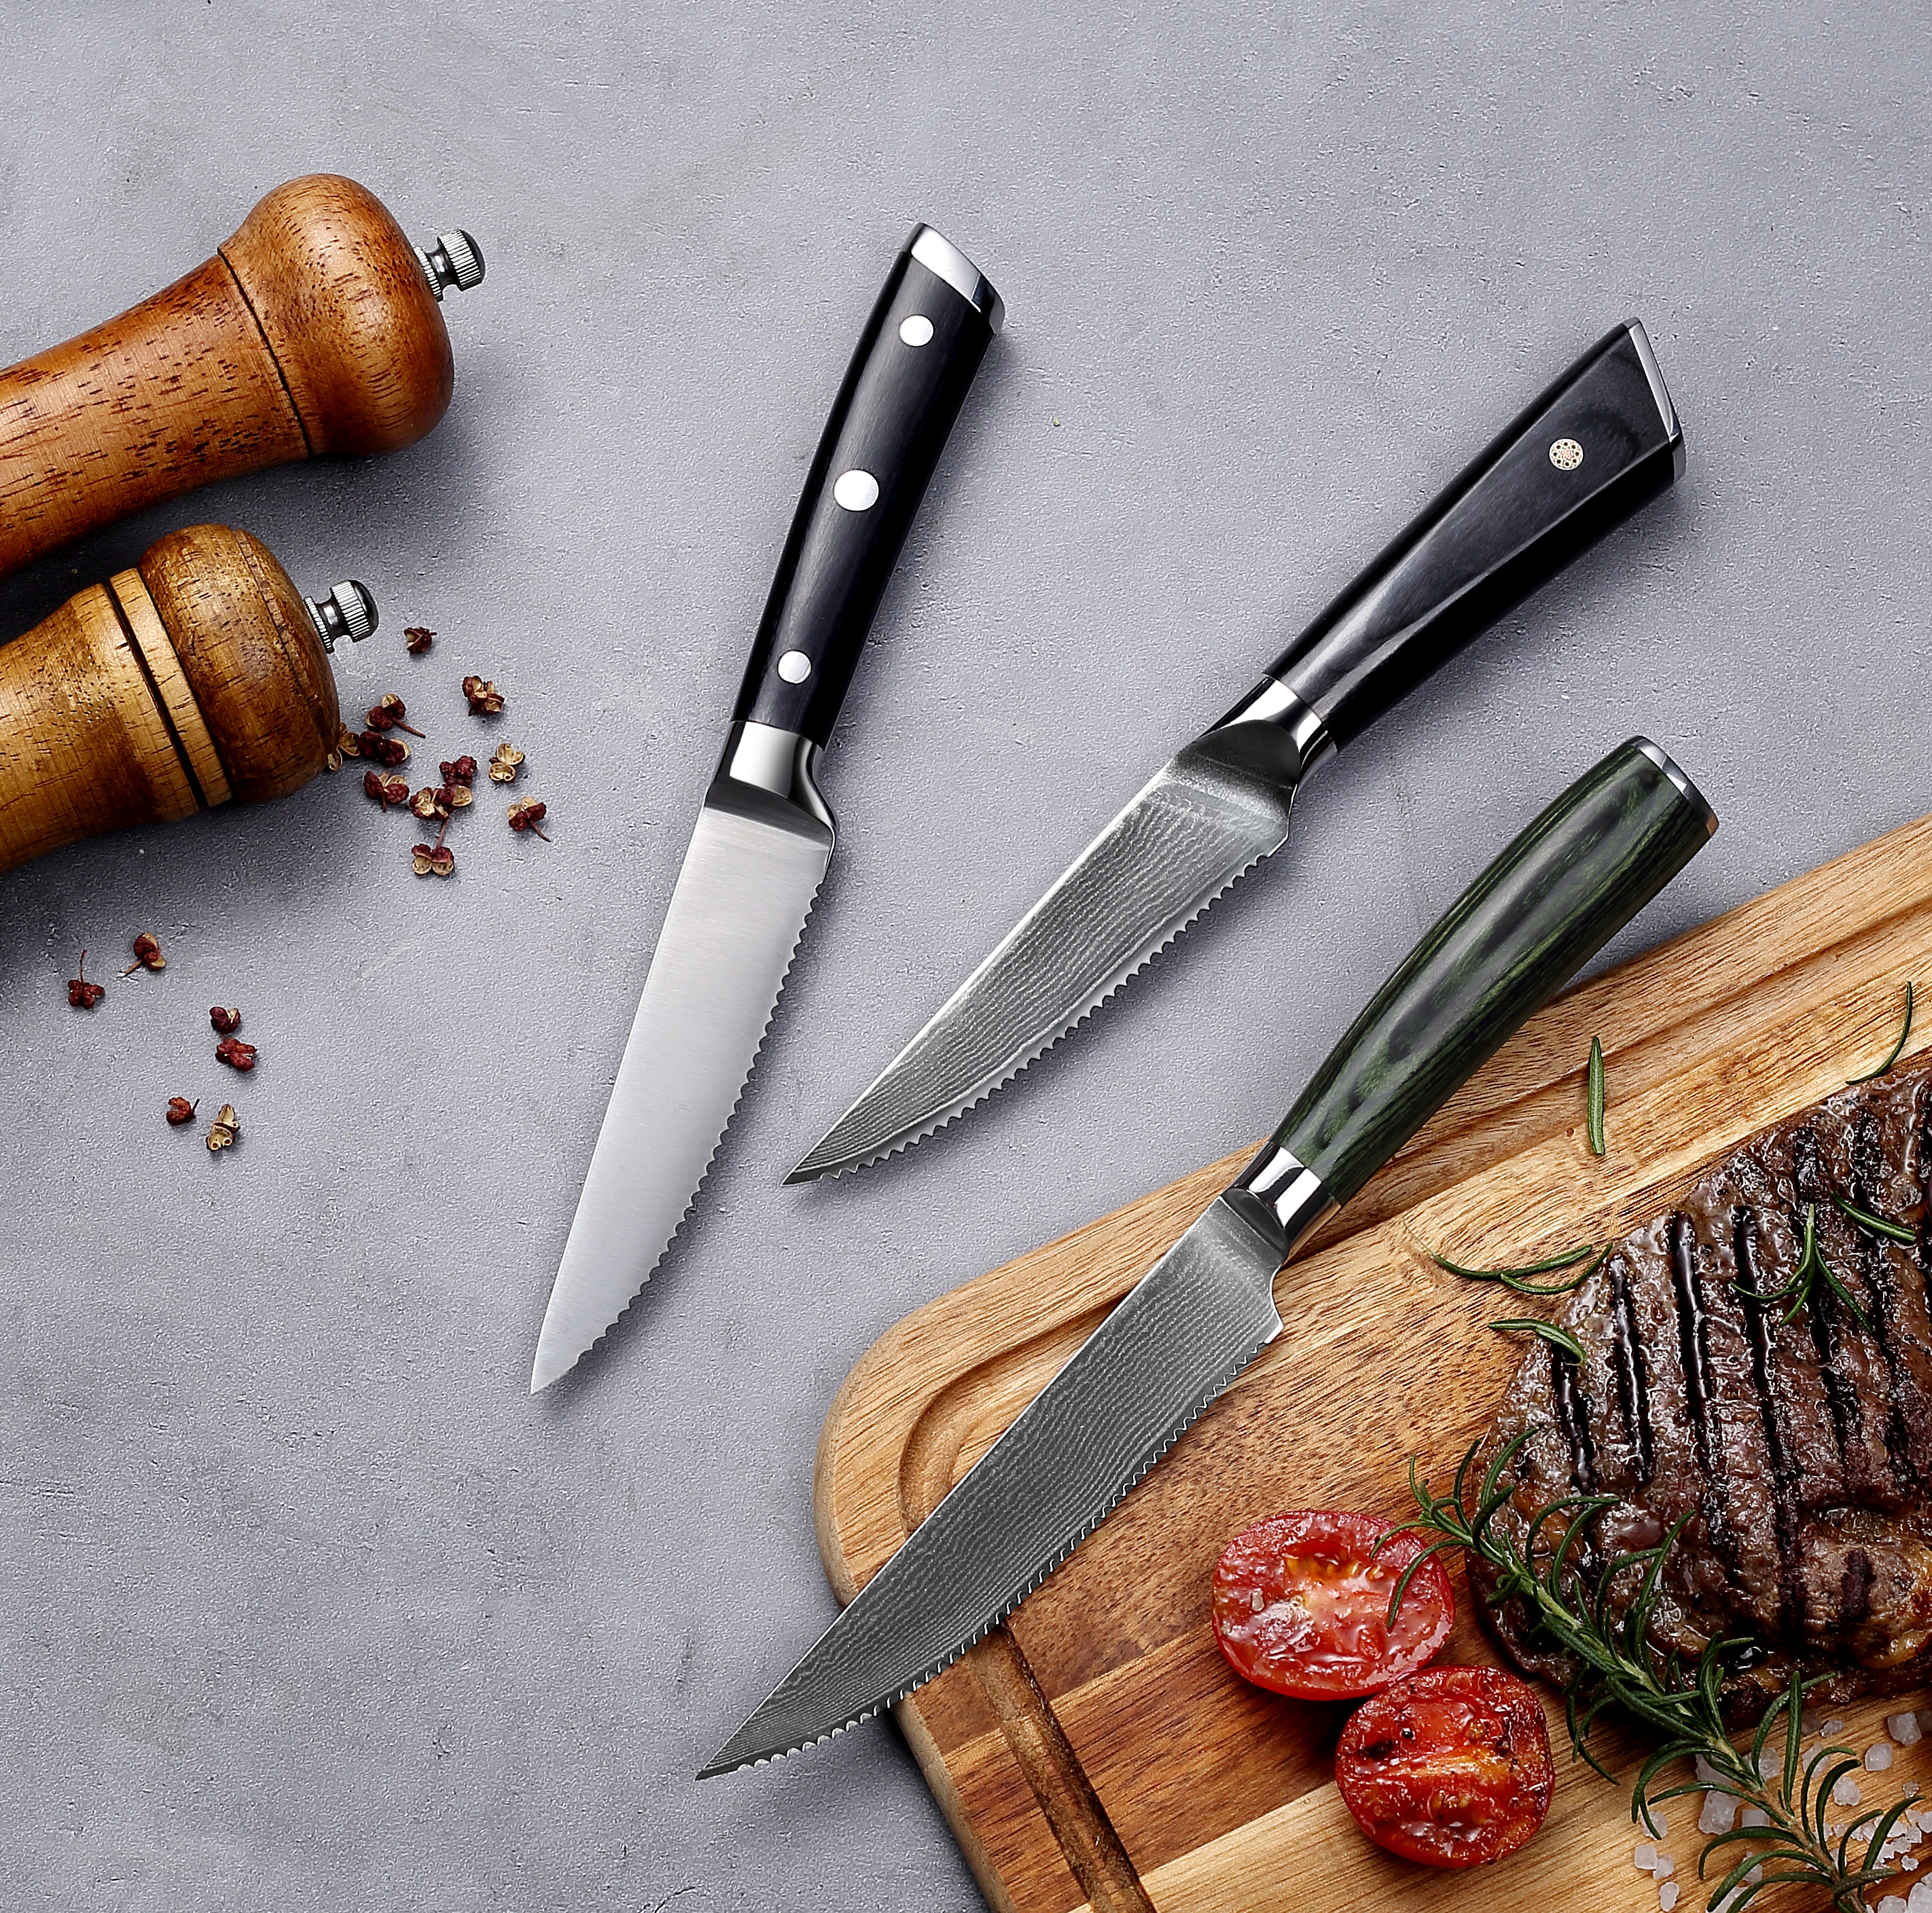 سكاكين شرائح اللحم بدرجة احترافية: شفرات حادة من الفولاذ المقاوم للصدأ كاملة التانغ للحصول على قطع مثالية